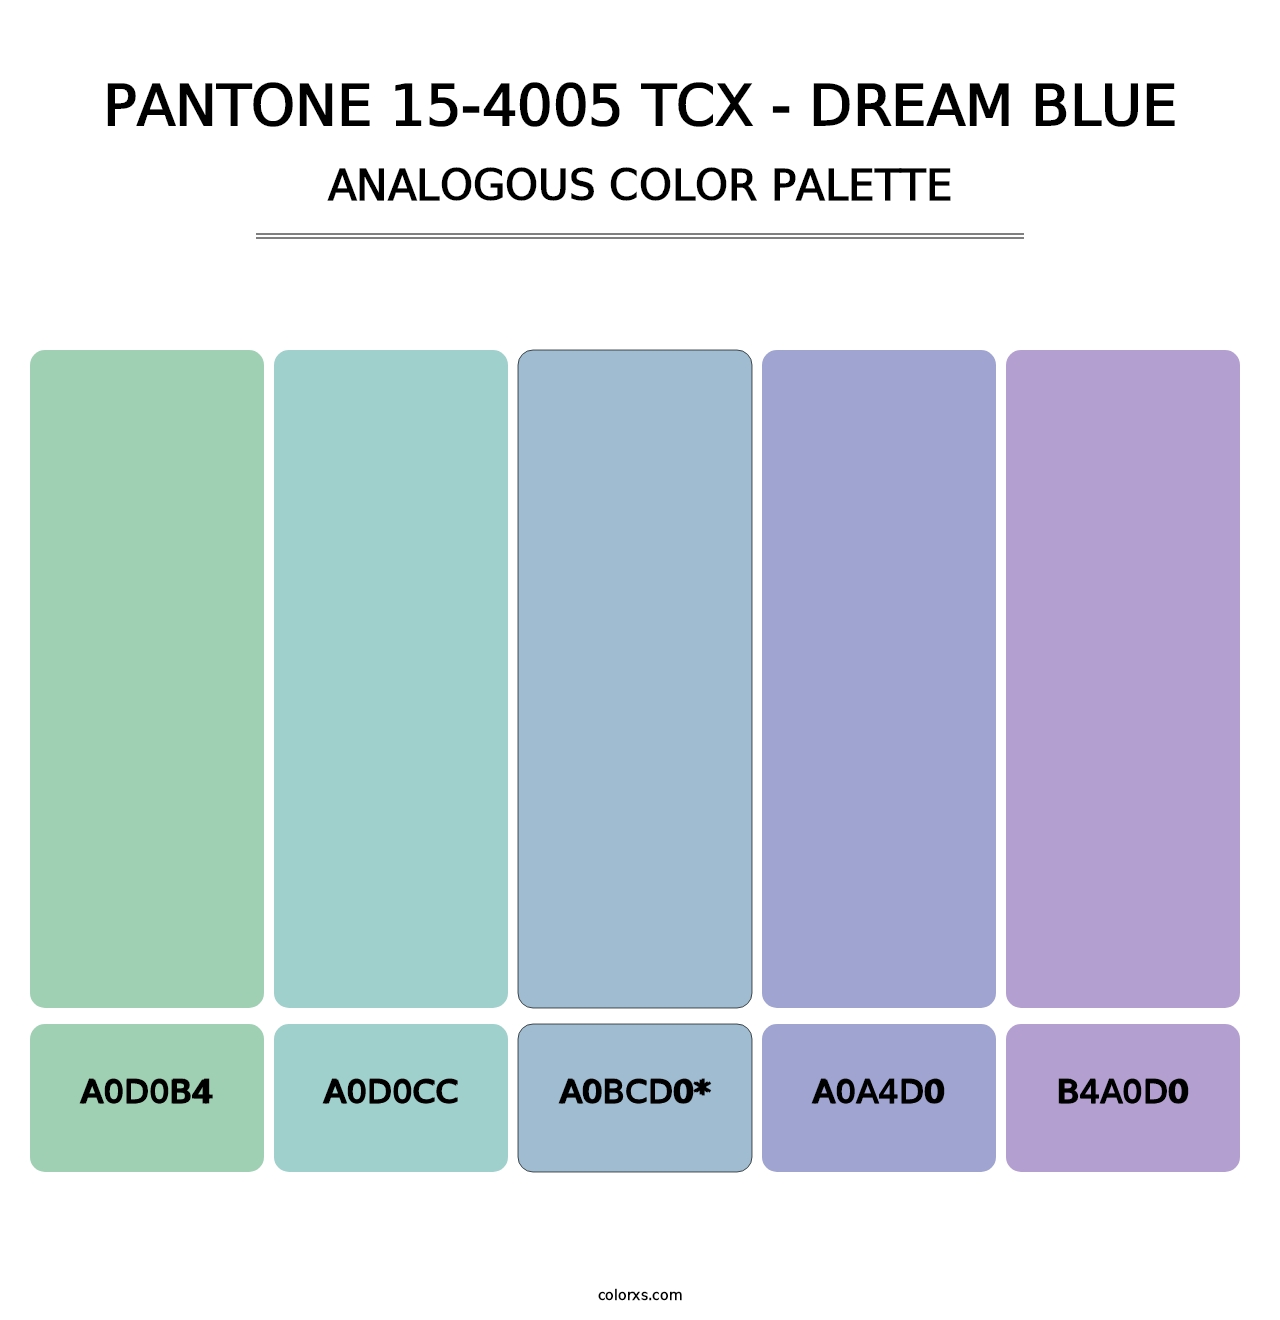 PANTONE 15-4005 TCX - Dream Blue - Analogous Color Palette